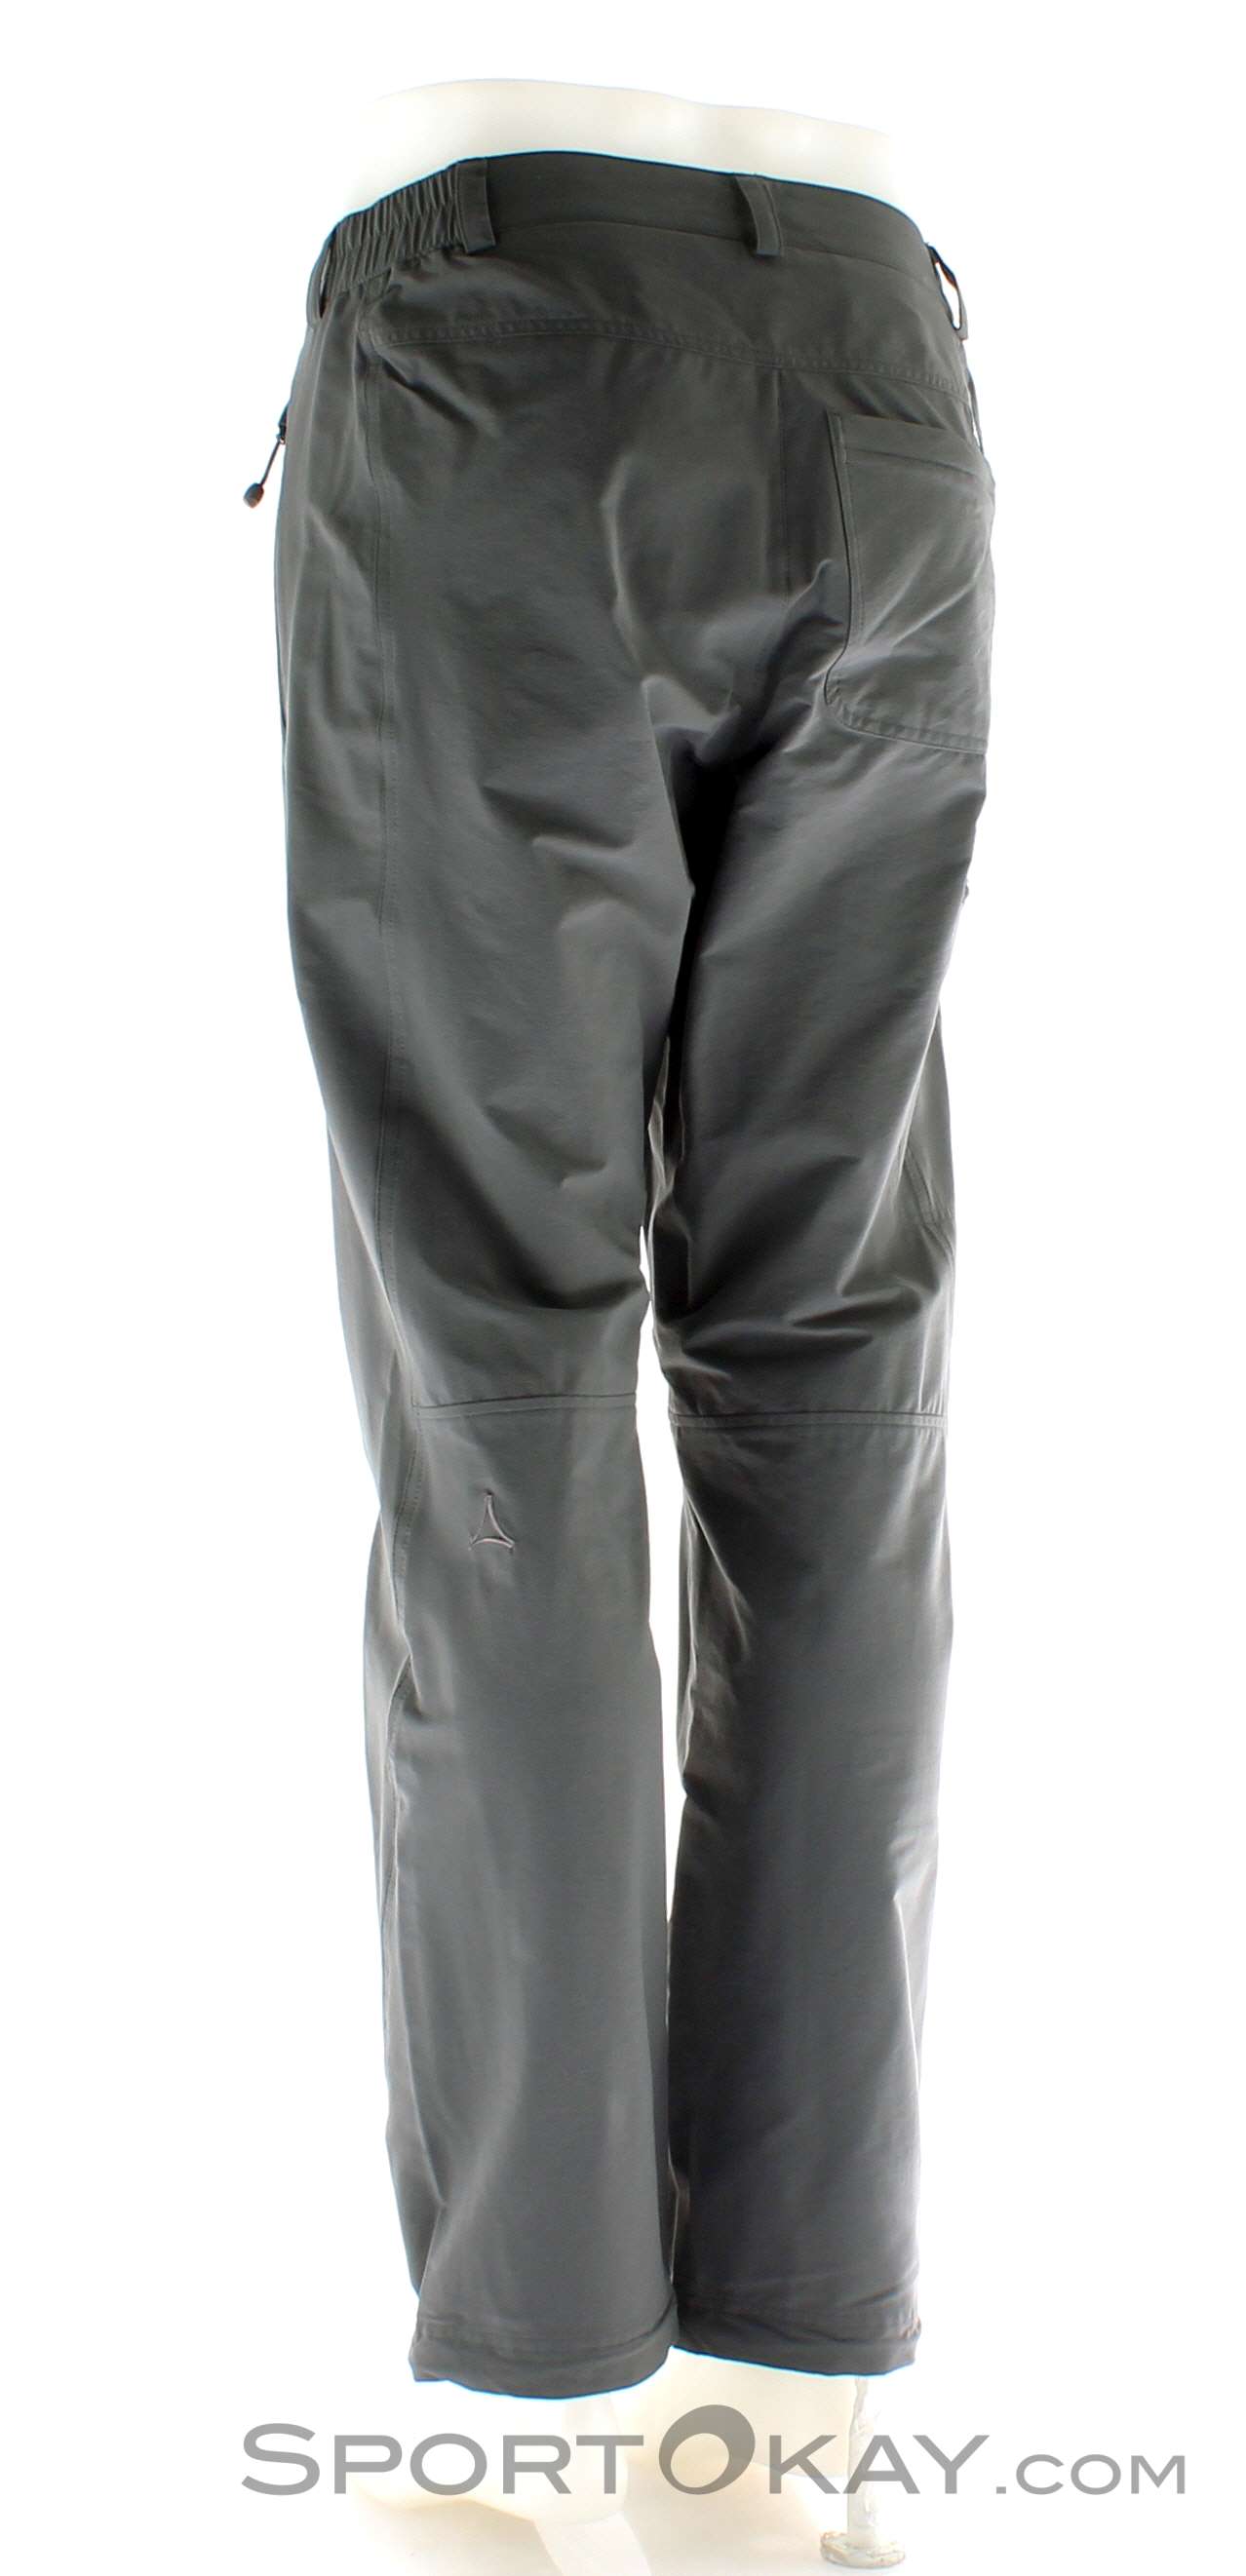 Schöffel Koper Pants Mens Clothing - - Pants All Pants Outdoor Outdoor - - Outdoor